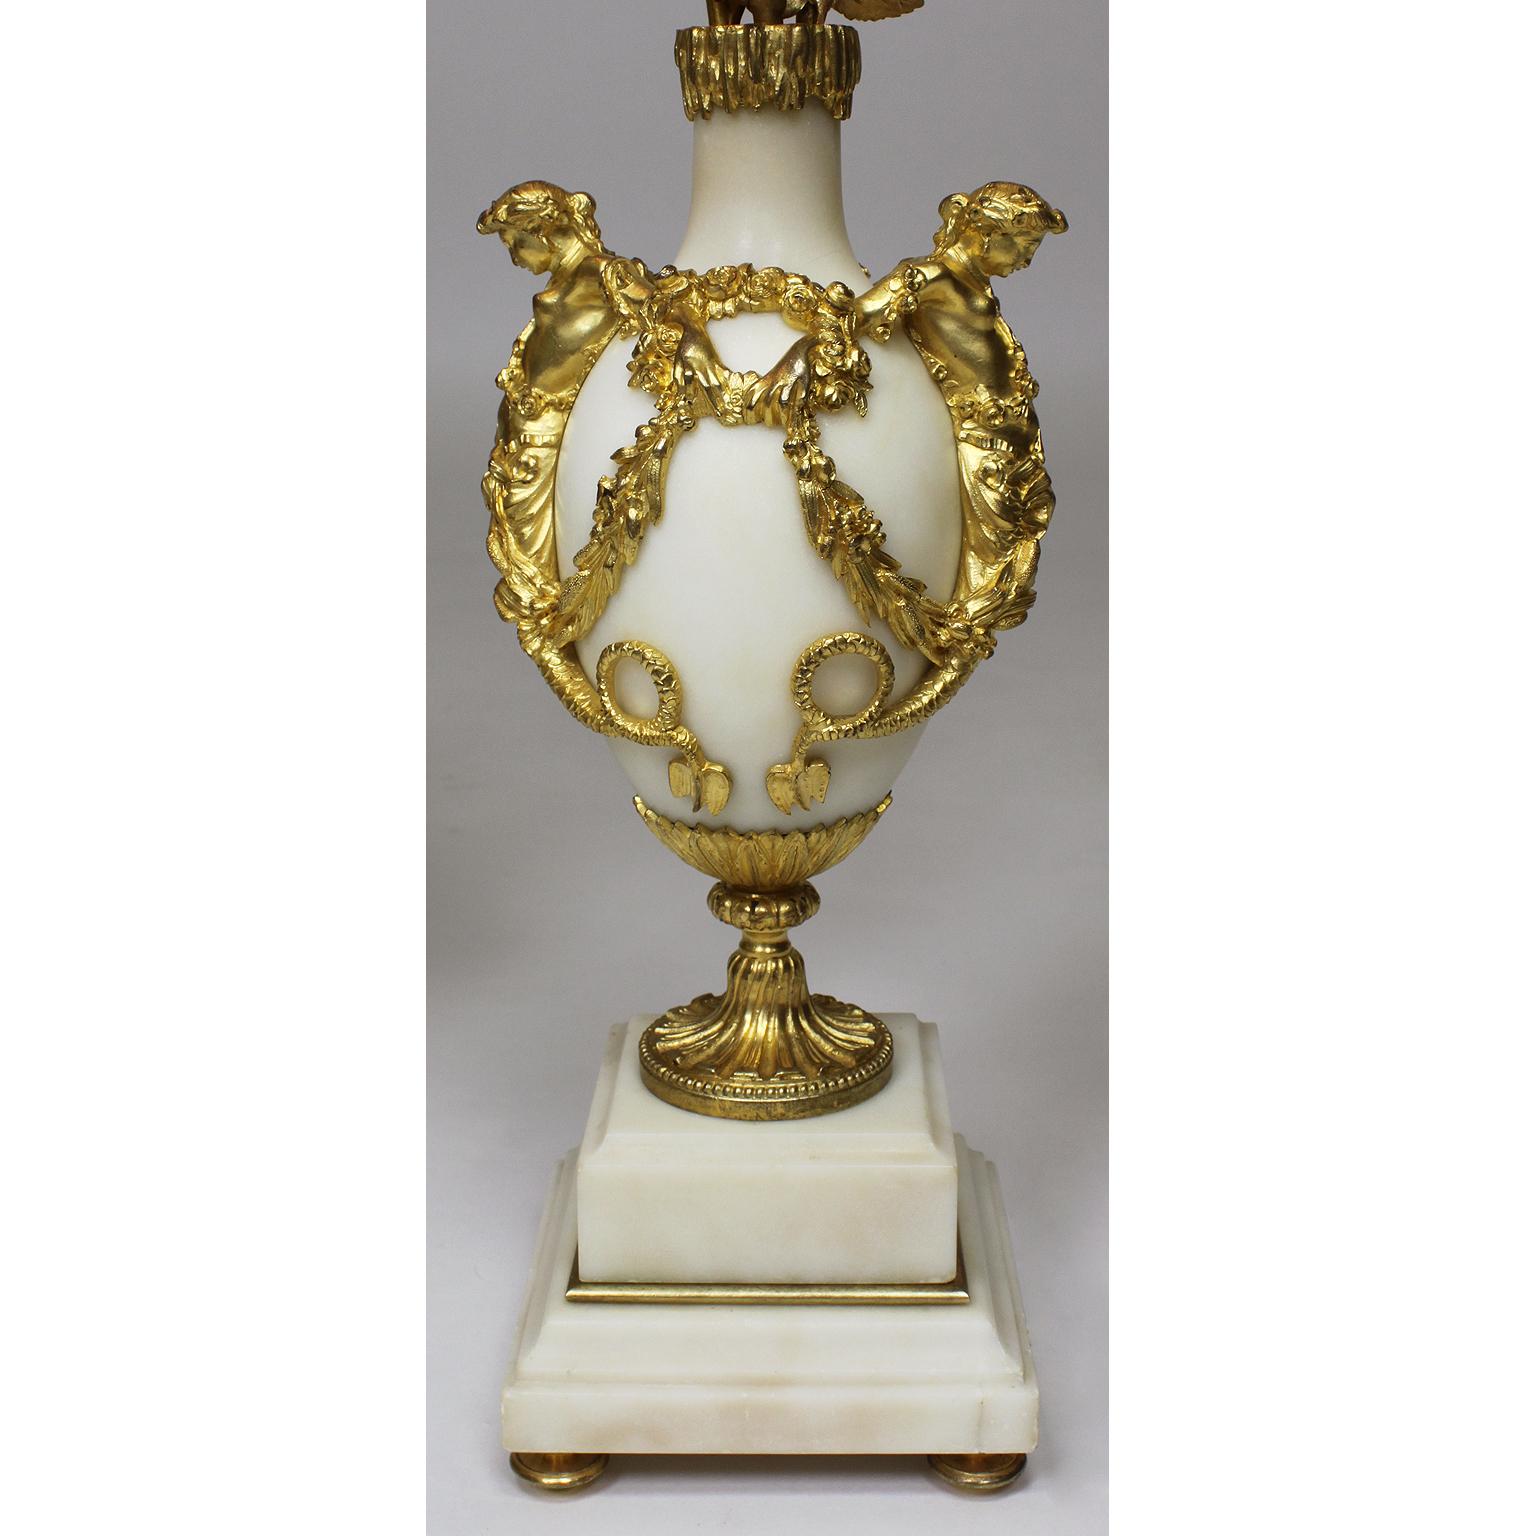 Une belle paire de candélabres de table à trois têtes en marbre et bronze doré du XIXe siècle. Le corps ovoïde en marbre blanc surmonté d'une paire de sirènes se tenant la main avec des couronnes de fleurs, sous un col en forme de glaçon, et d'un